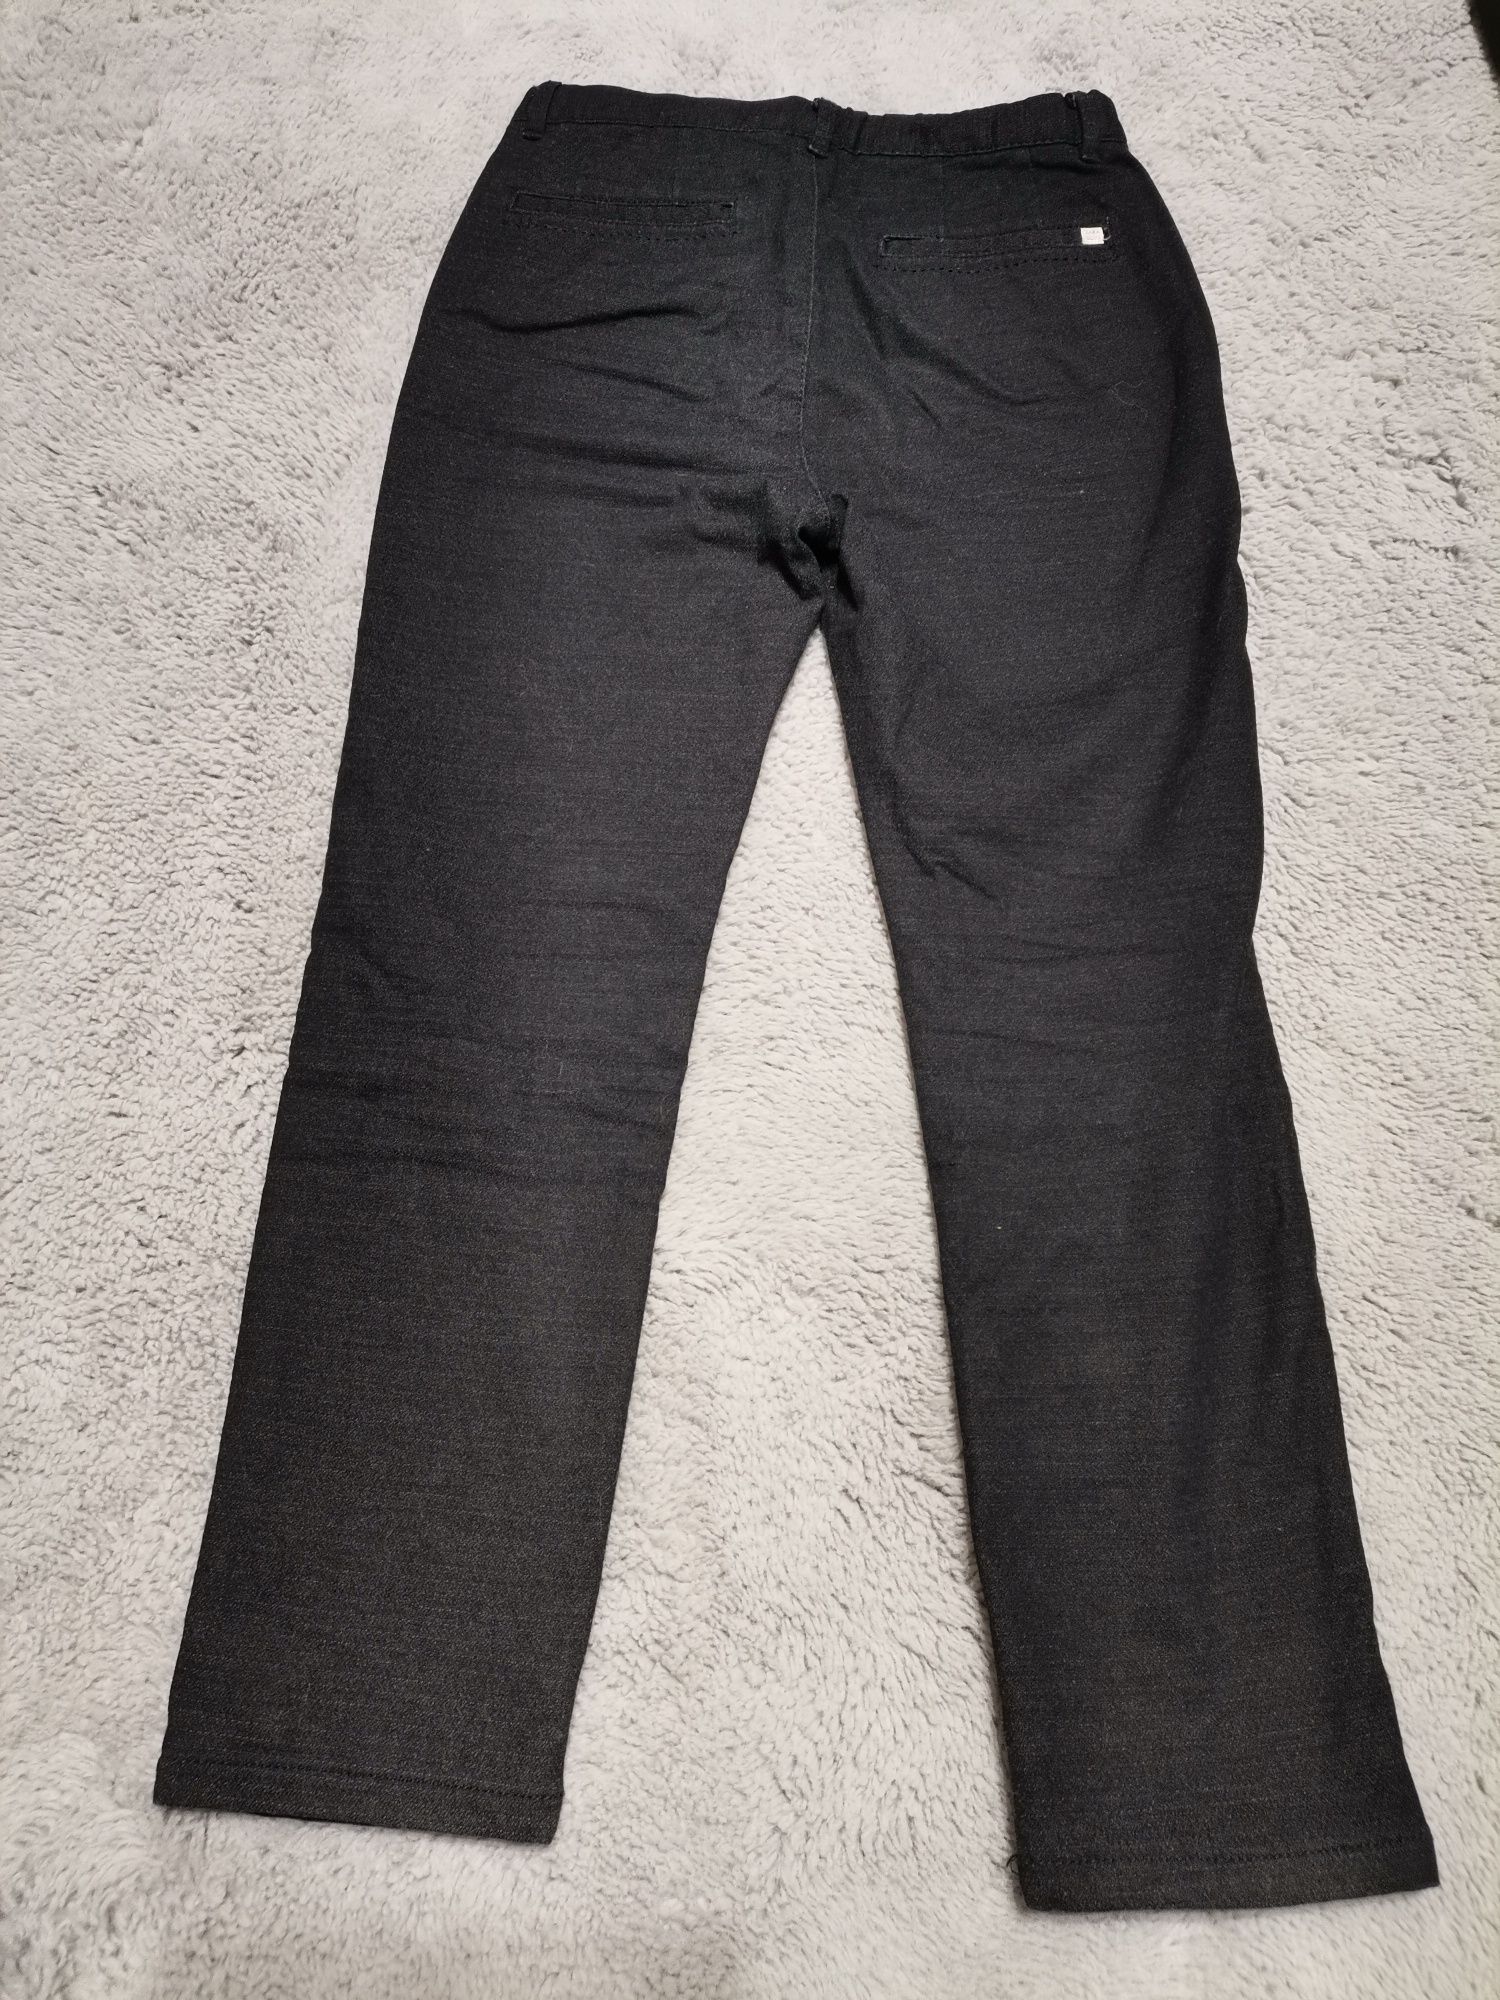 Vand pantaloni de iarna pentru baieti de 8 ani, 128 cm, Zara